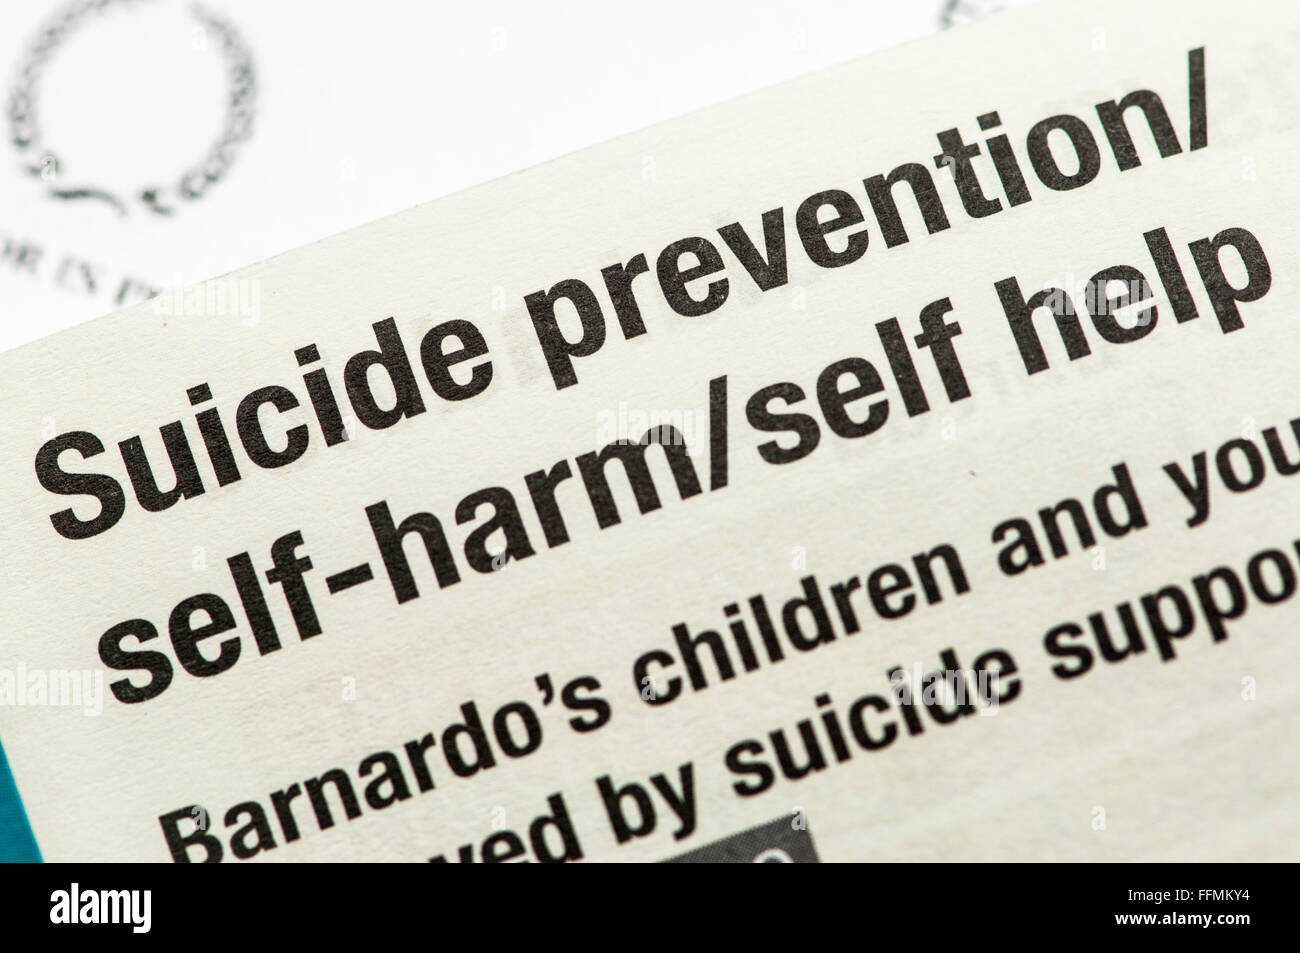 Répertoire de l'automutilation, la prévention du suicide et d'autres services de santé mentale Banque D'Images